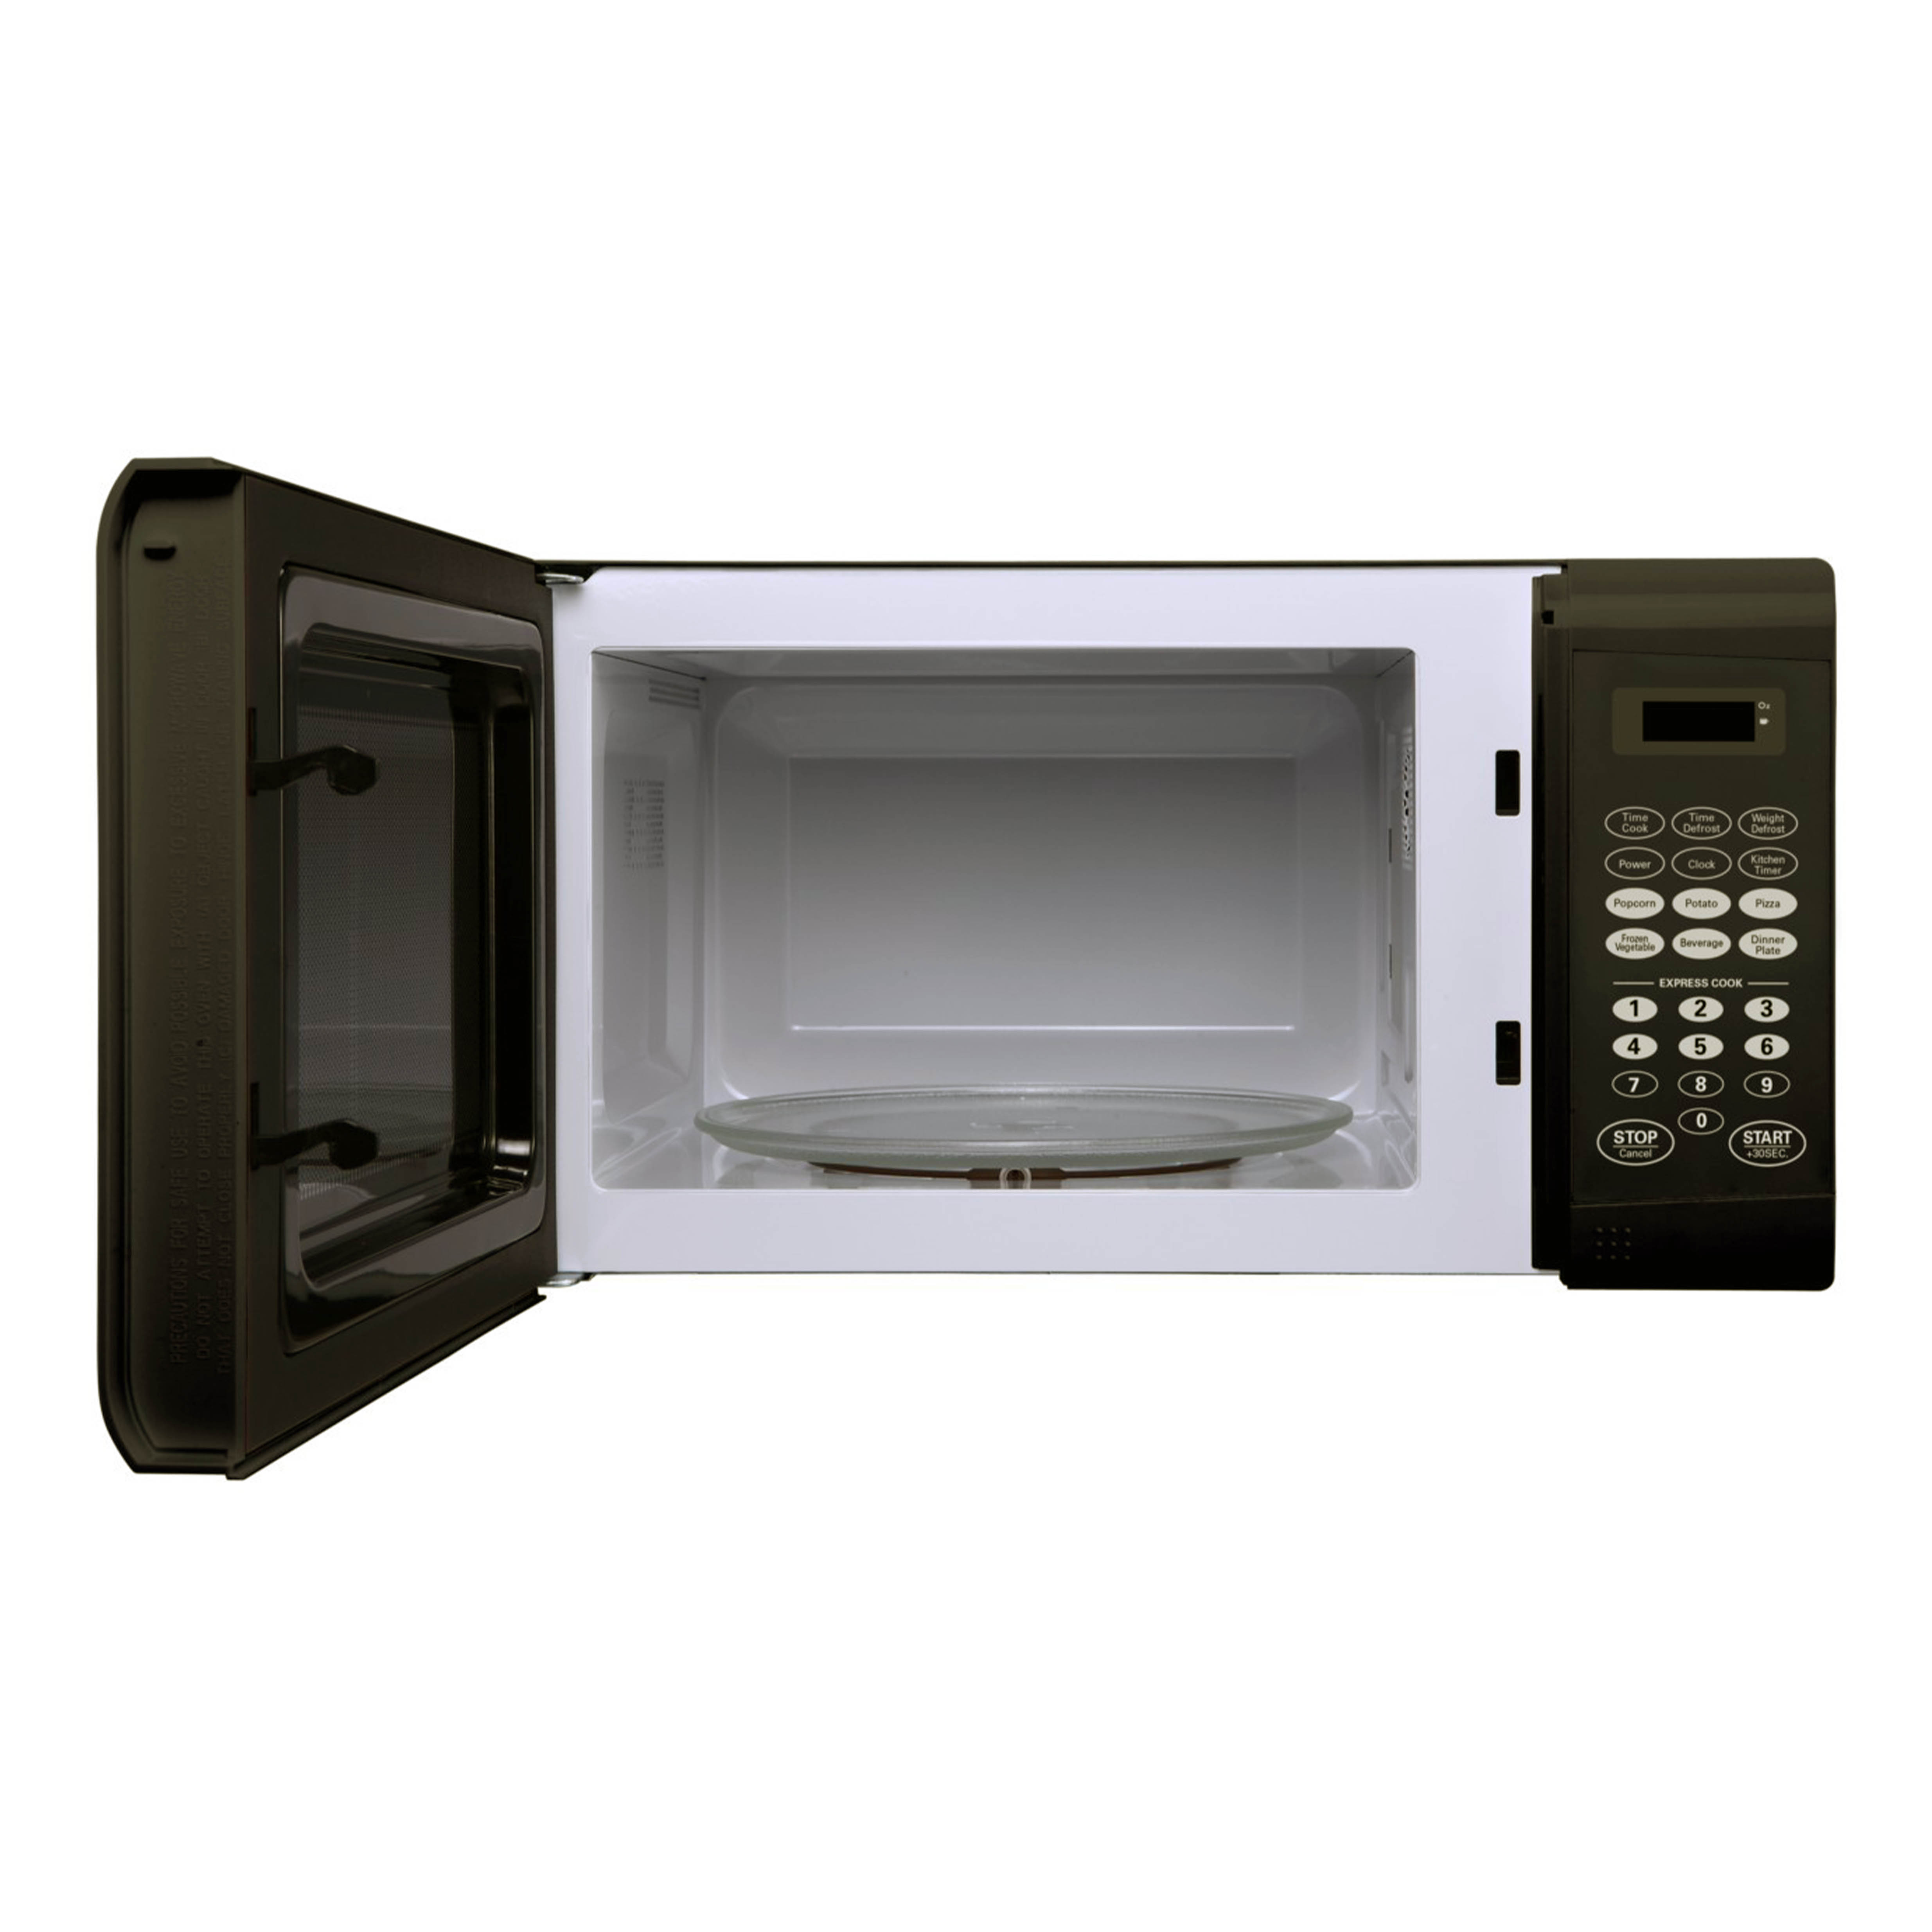 900 Watt Microwave in Black - image 3 of 4